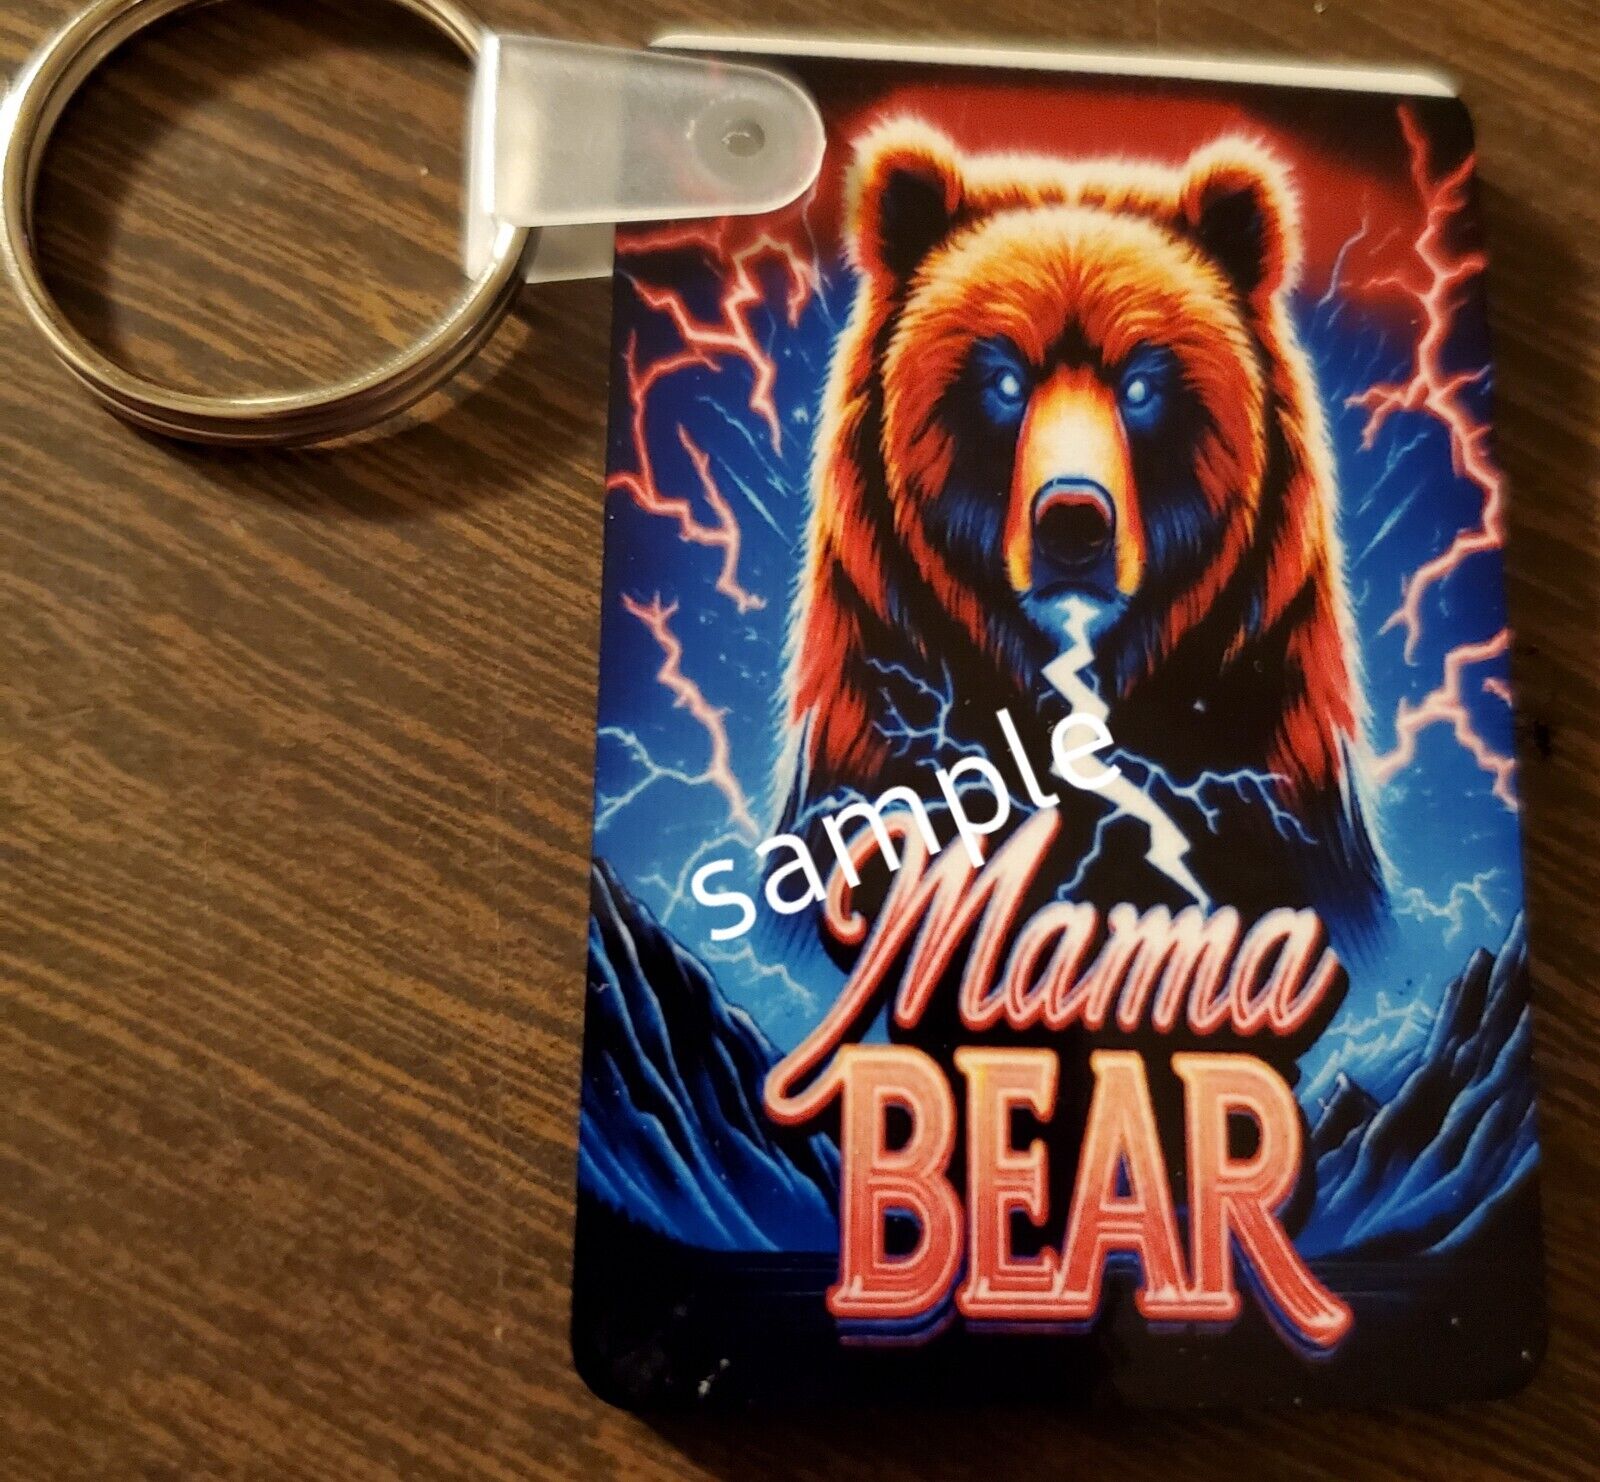 Mama Bear Keychain